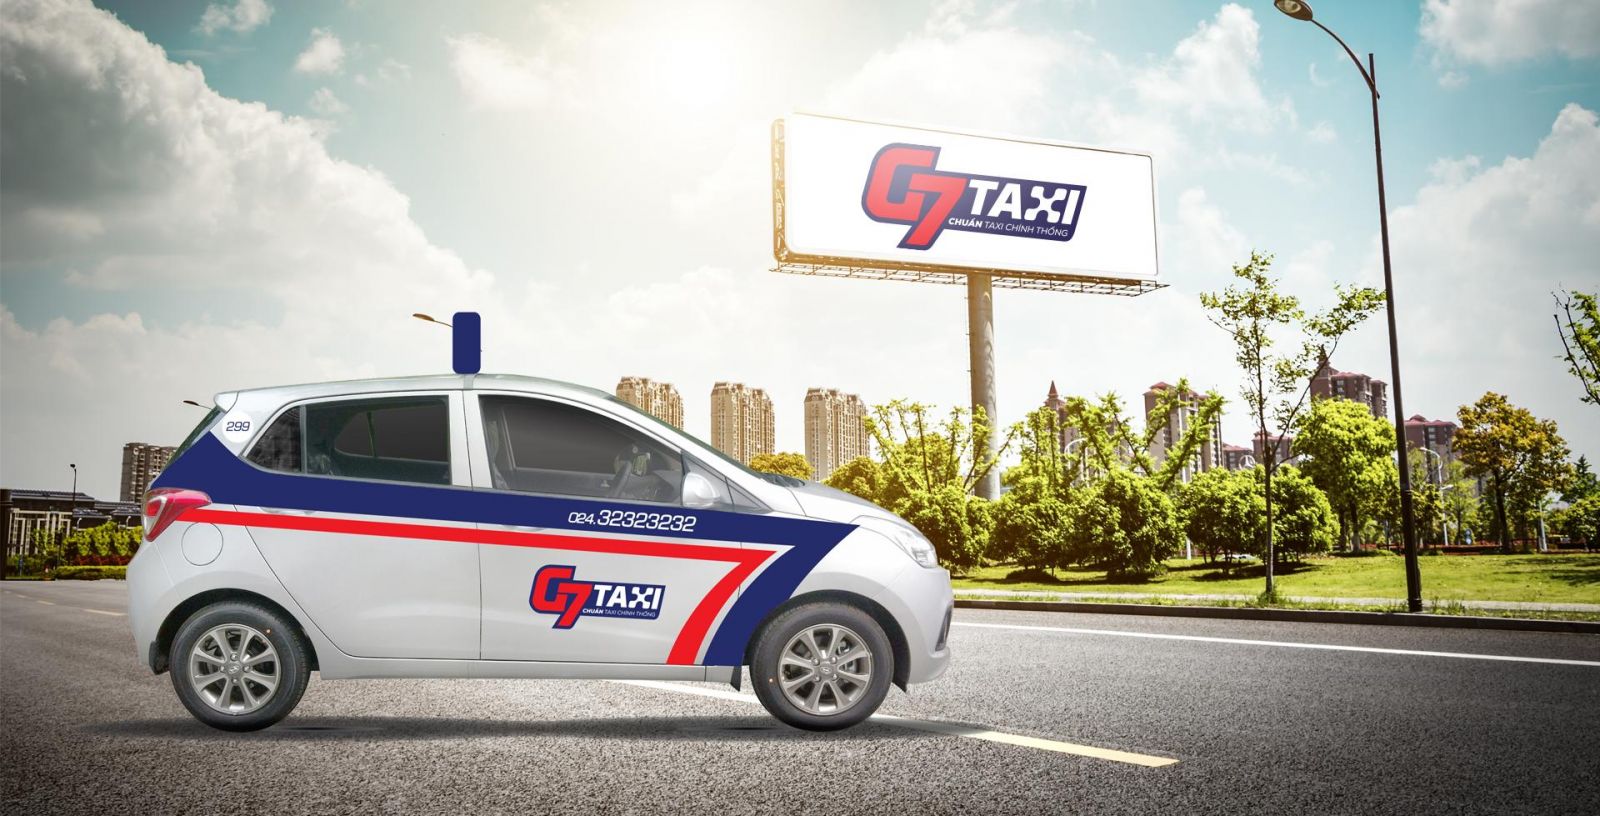 Grabとの戦いで、G7タクシーはマーケティングとテクノロジーに数百万ドルを「大胆に費やした」